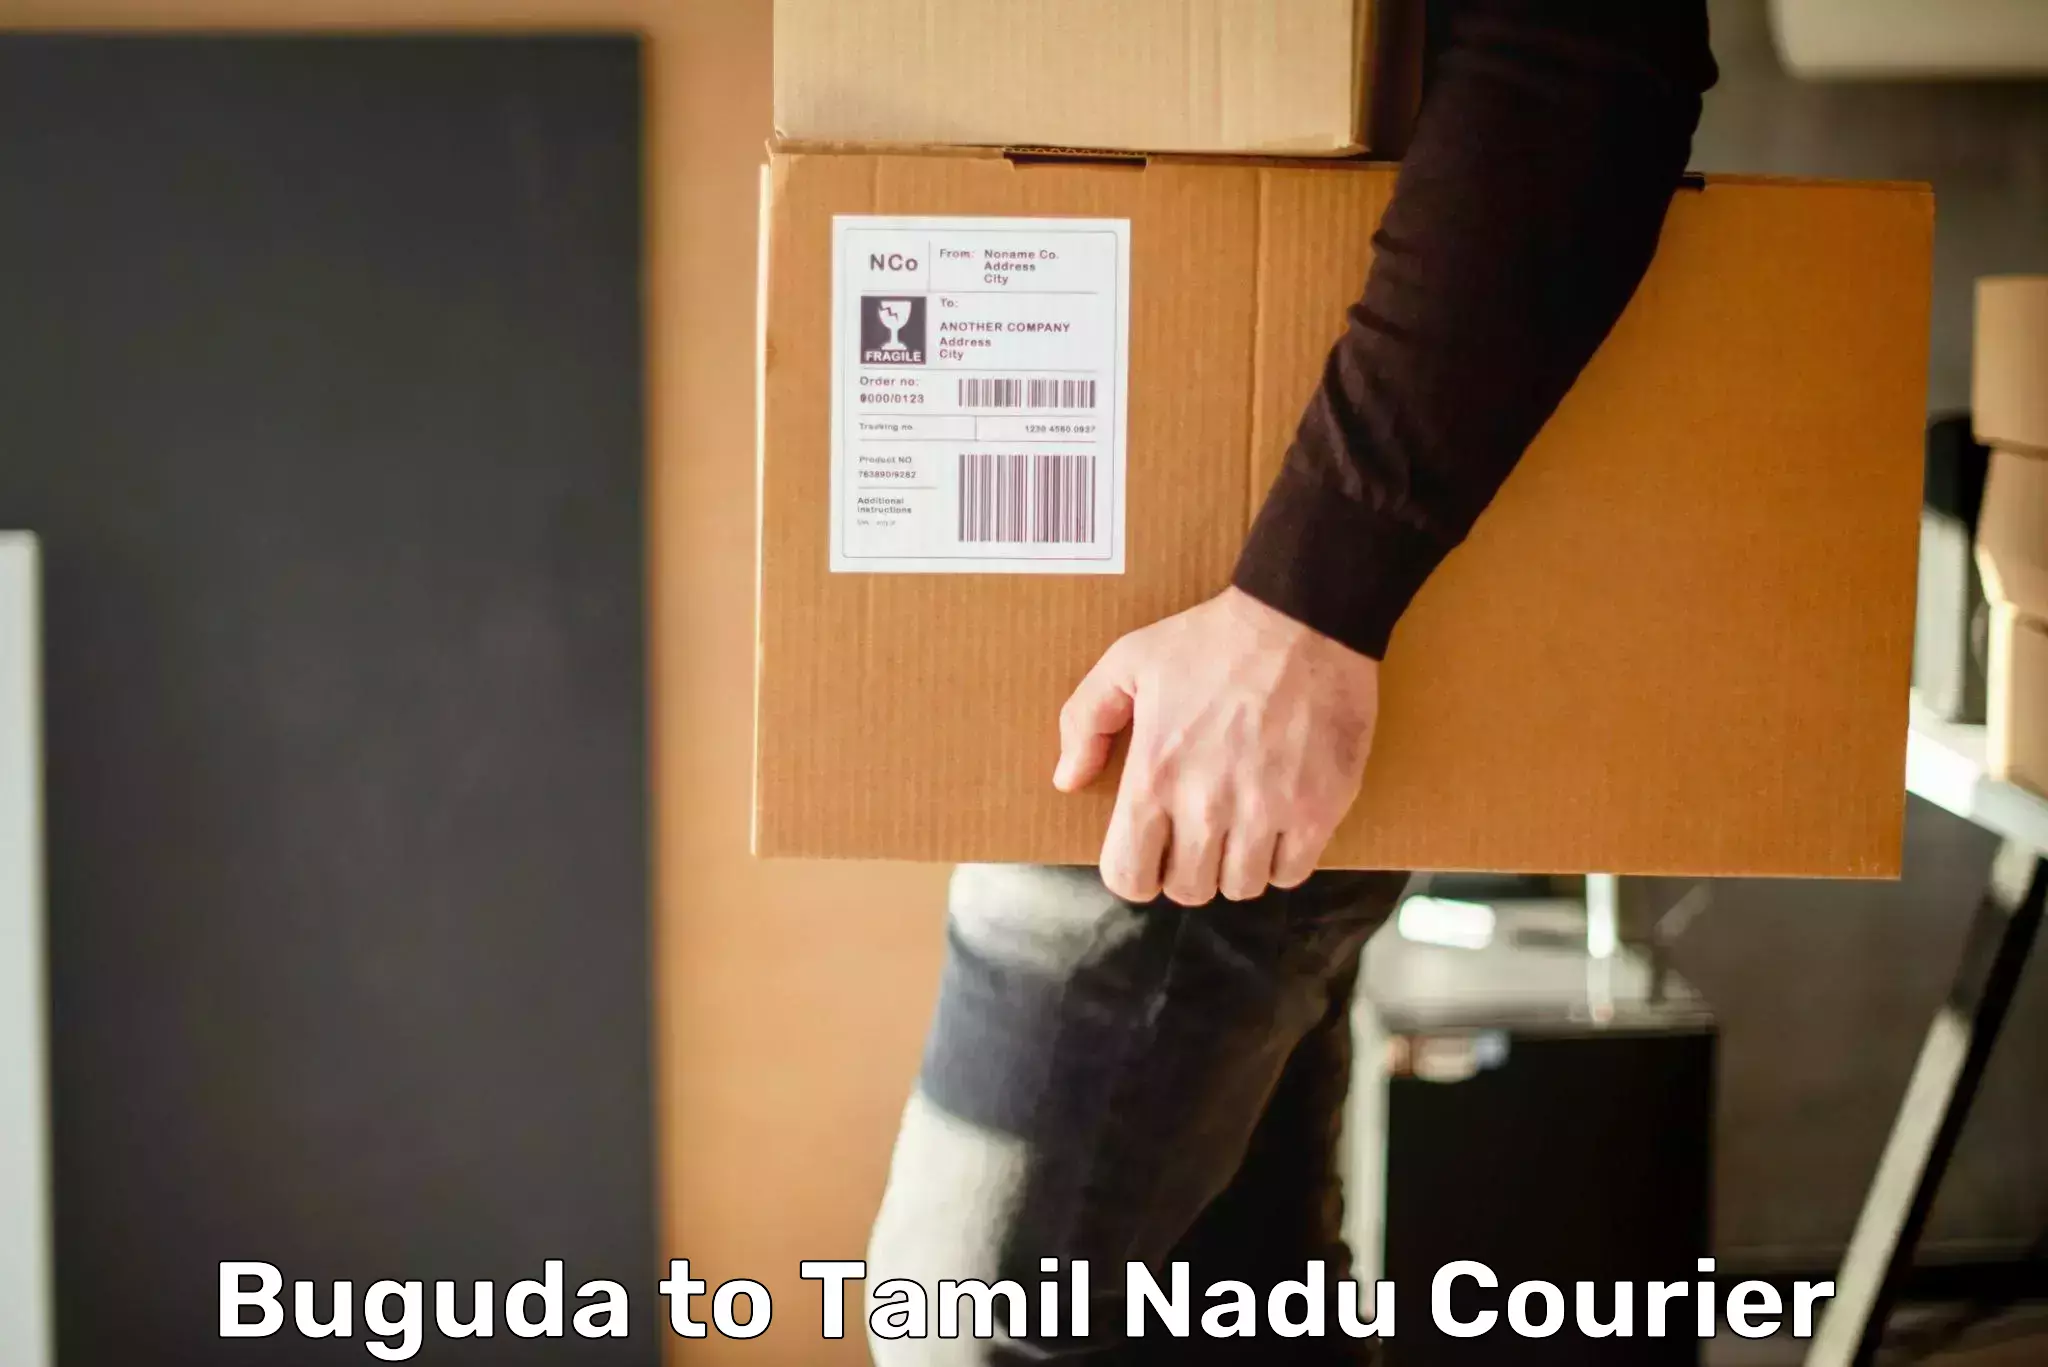 24/7 shipping services Buguda to Udagamandalam